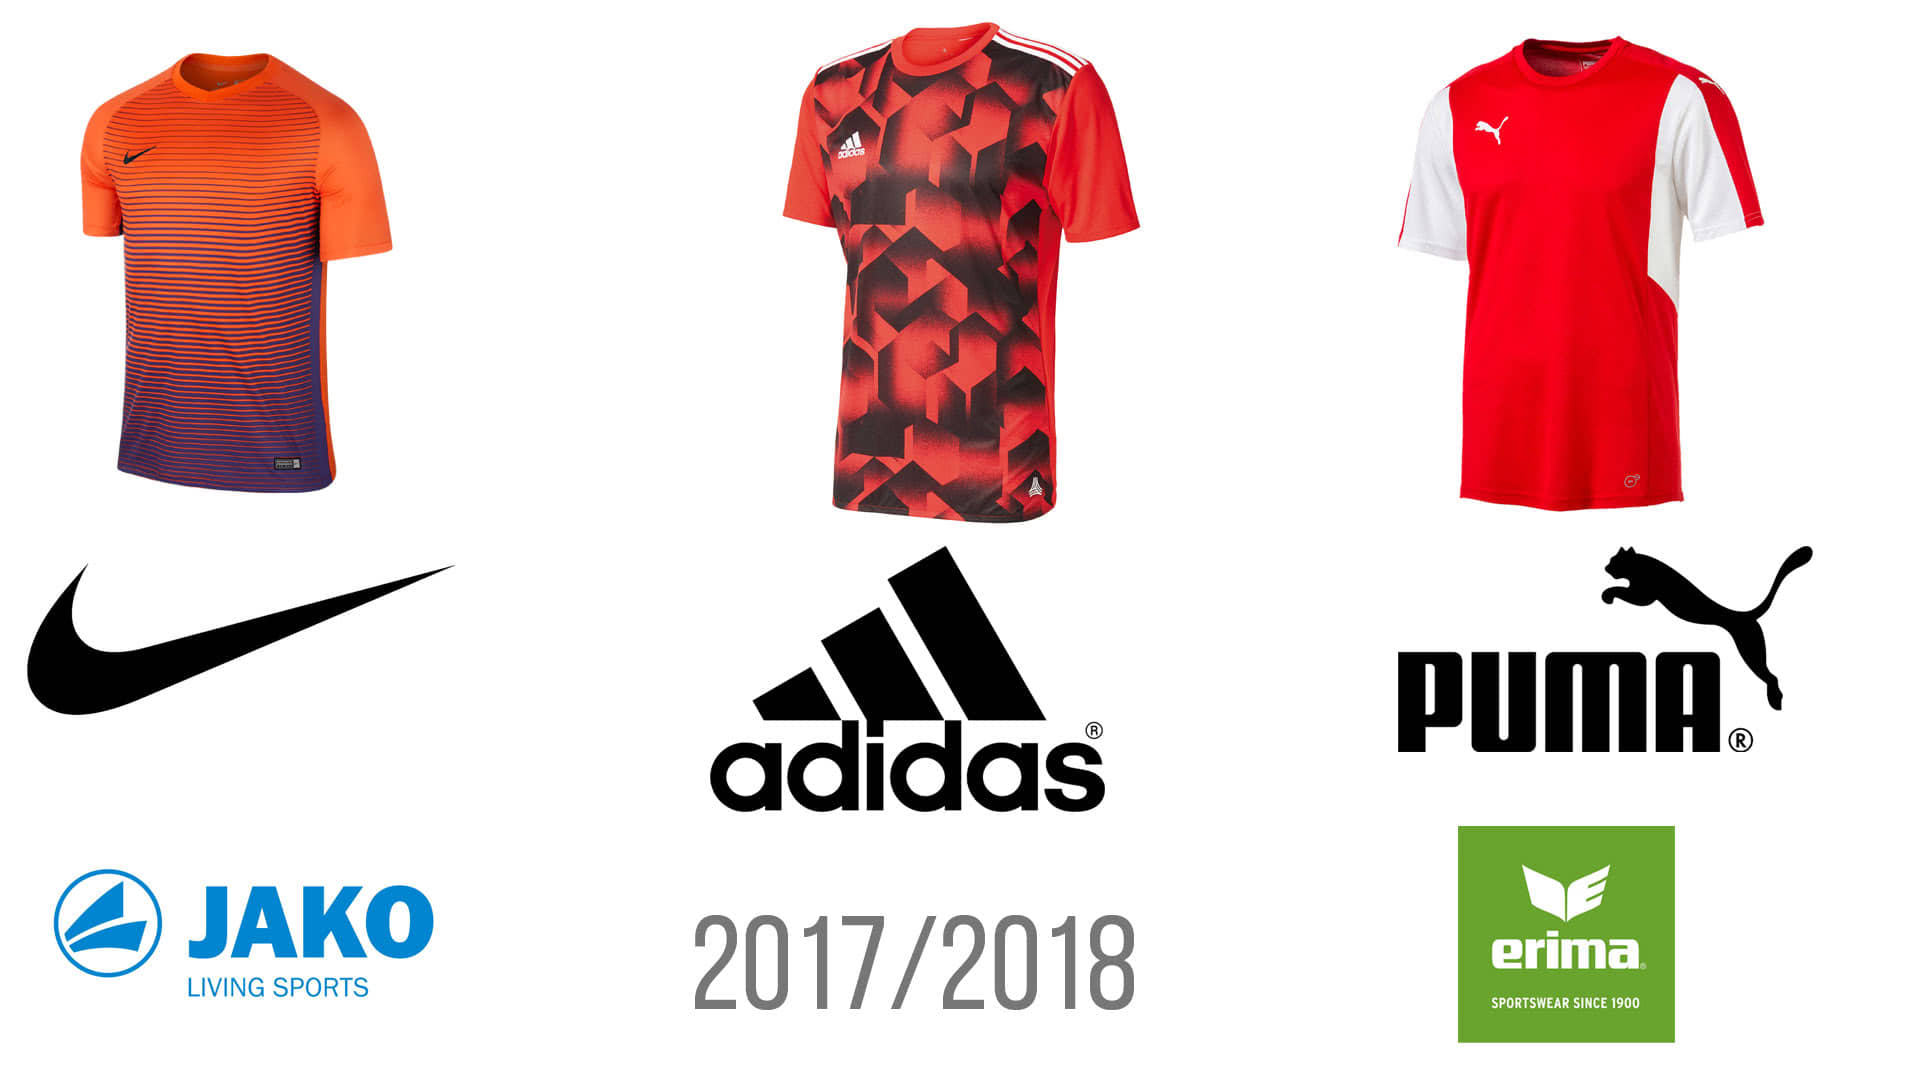 Die Fußball Trikot 2017/2018 Neuheiten von Adidas, Nike, Puma, Jako und Erima